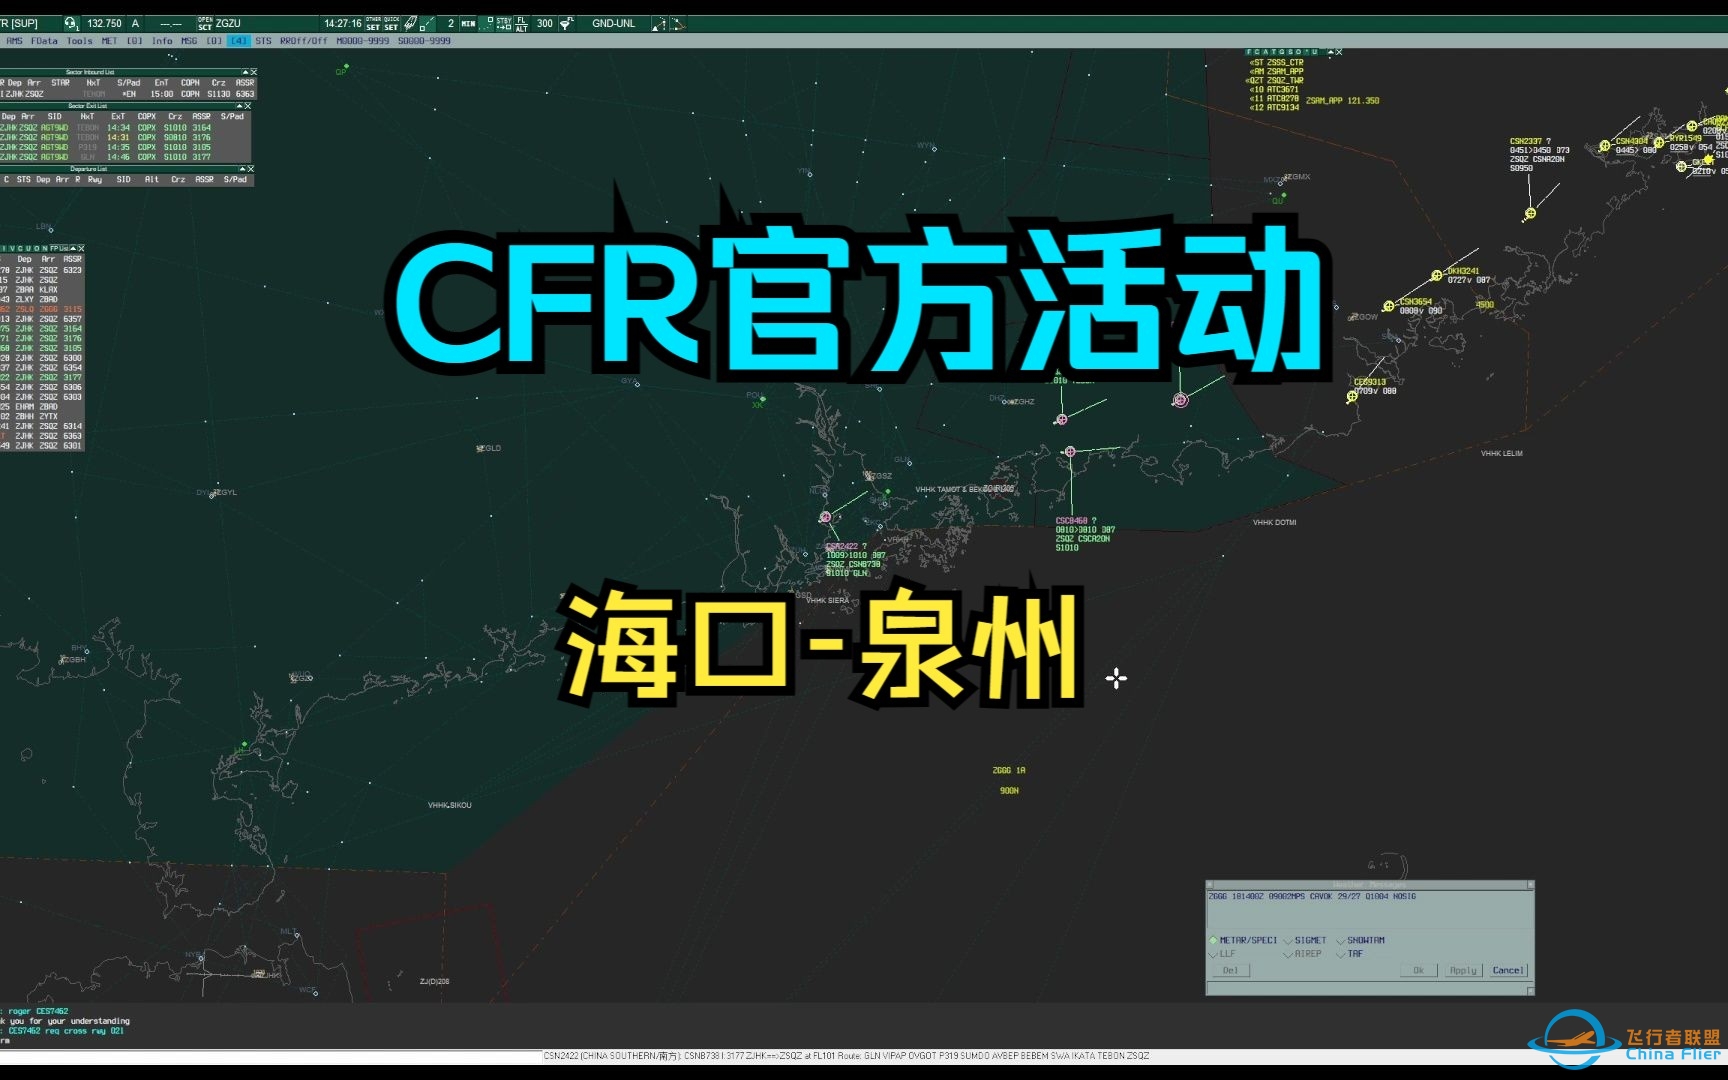 【CFR官方活动】ZGZU_CTR-9021 